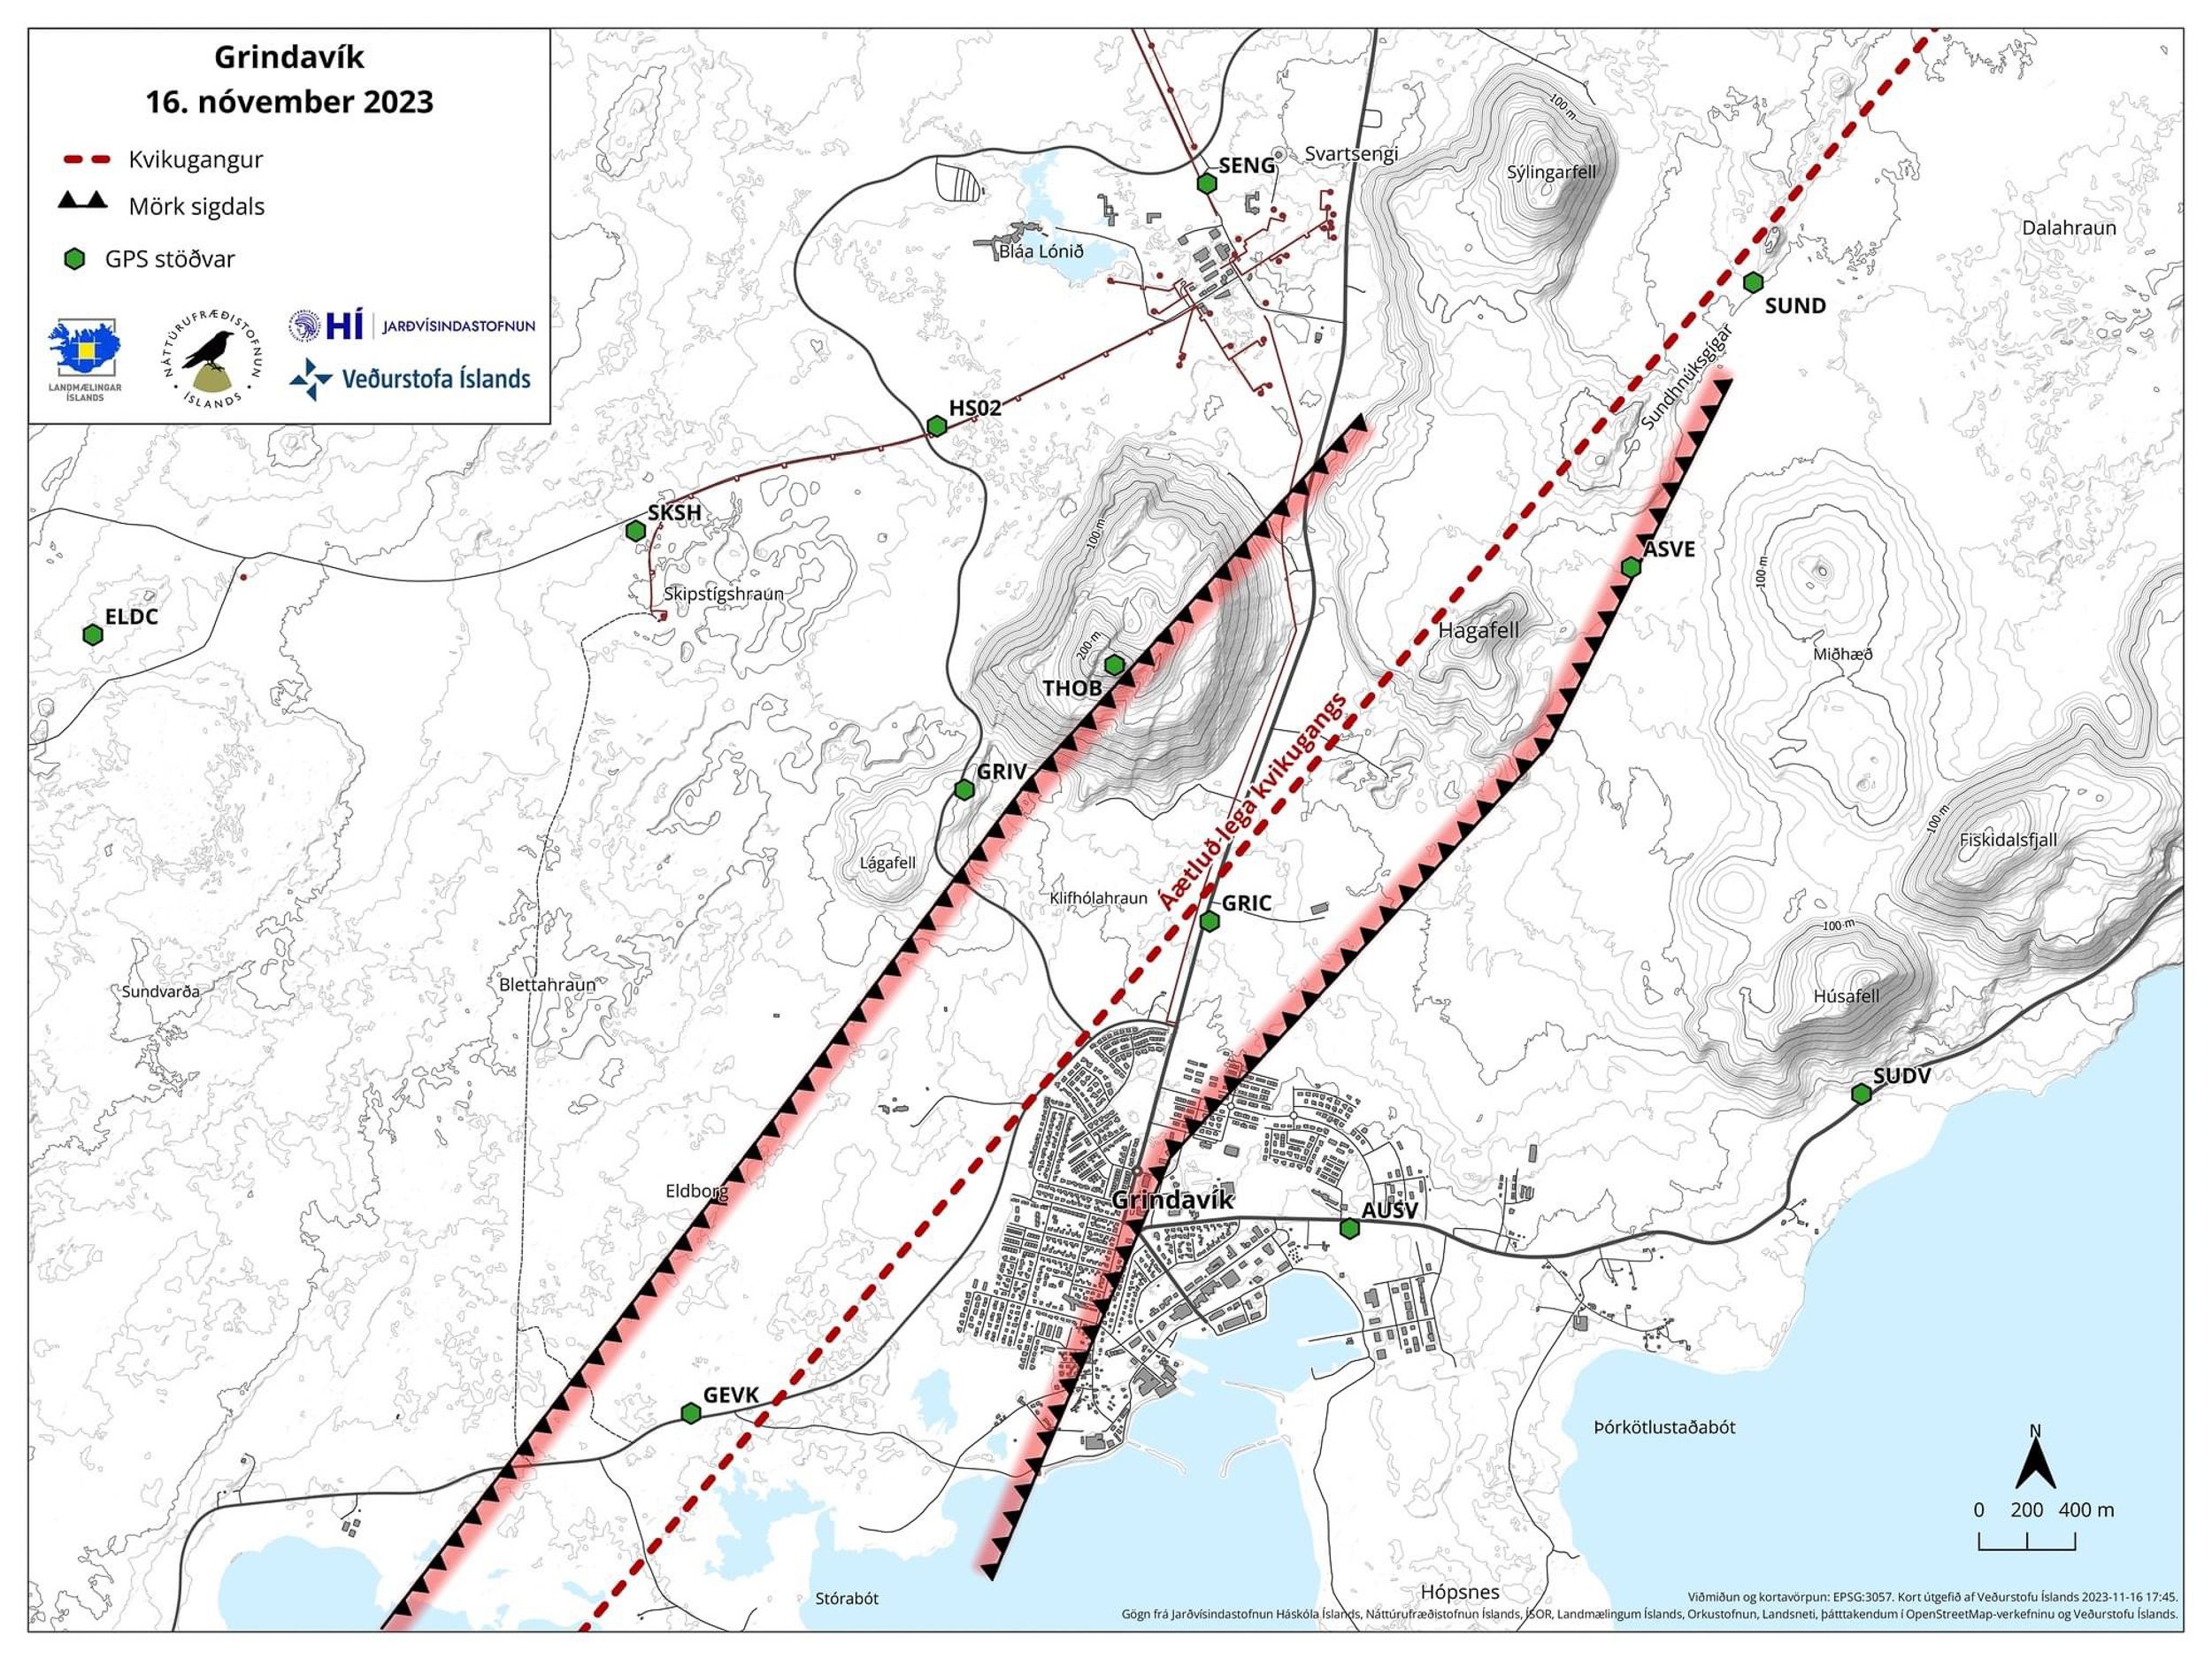 Étendue de l'affaissement dû à l'intrusion magmatique autour de Grindavík - l'affaissement aurait été mesuré à 25 cm le 17 novembre 2023, une semaine après les événements